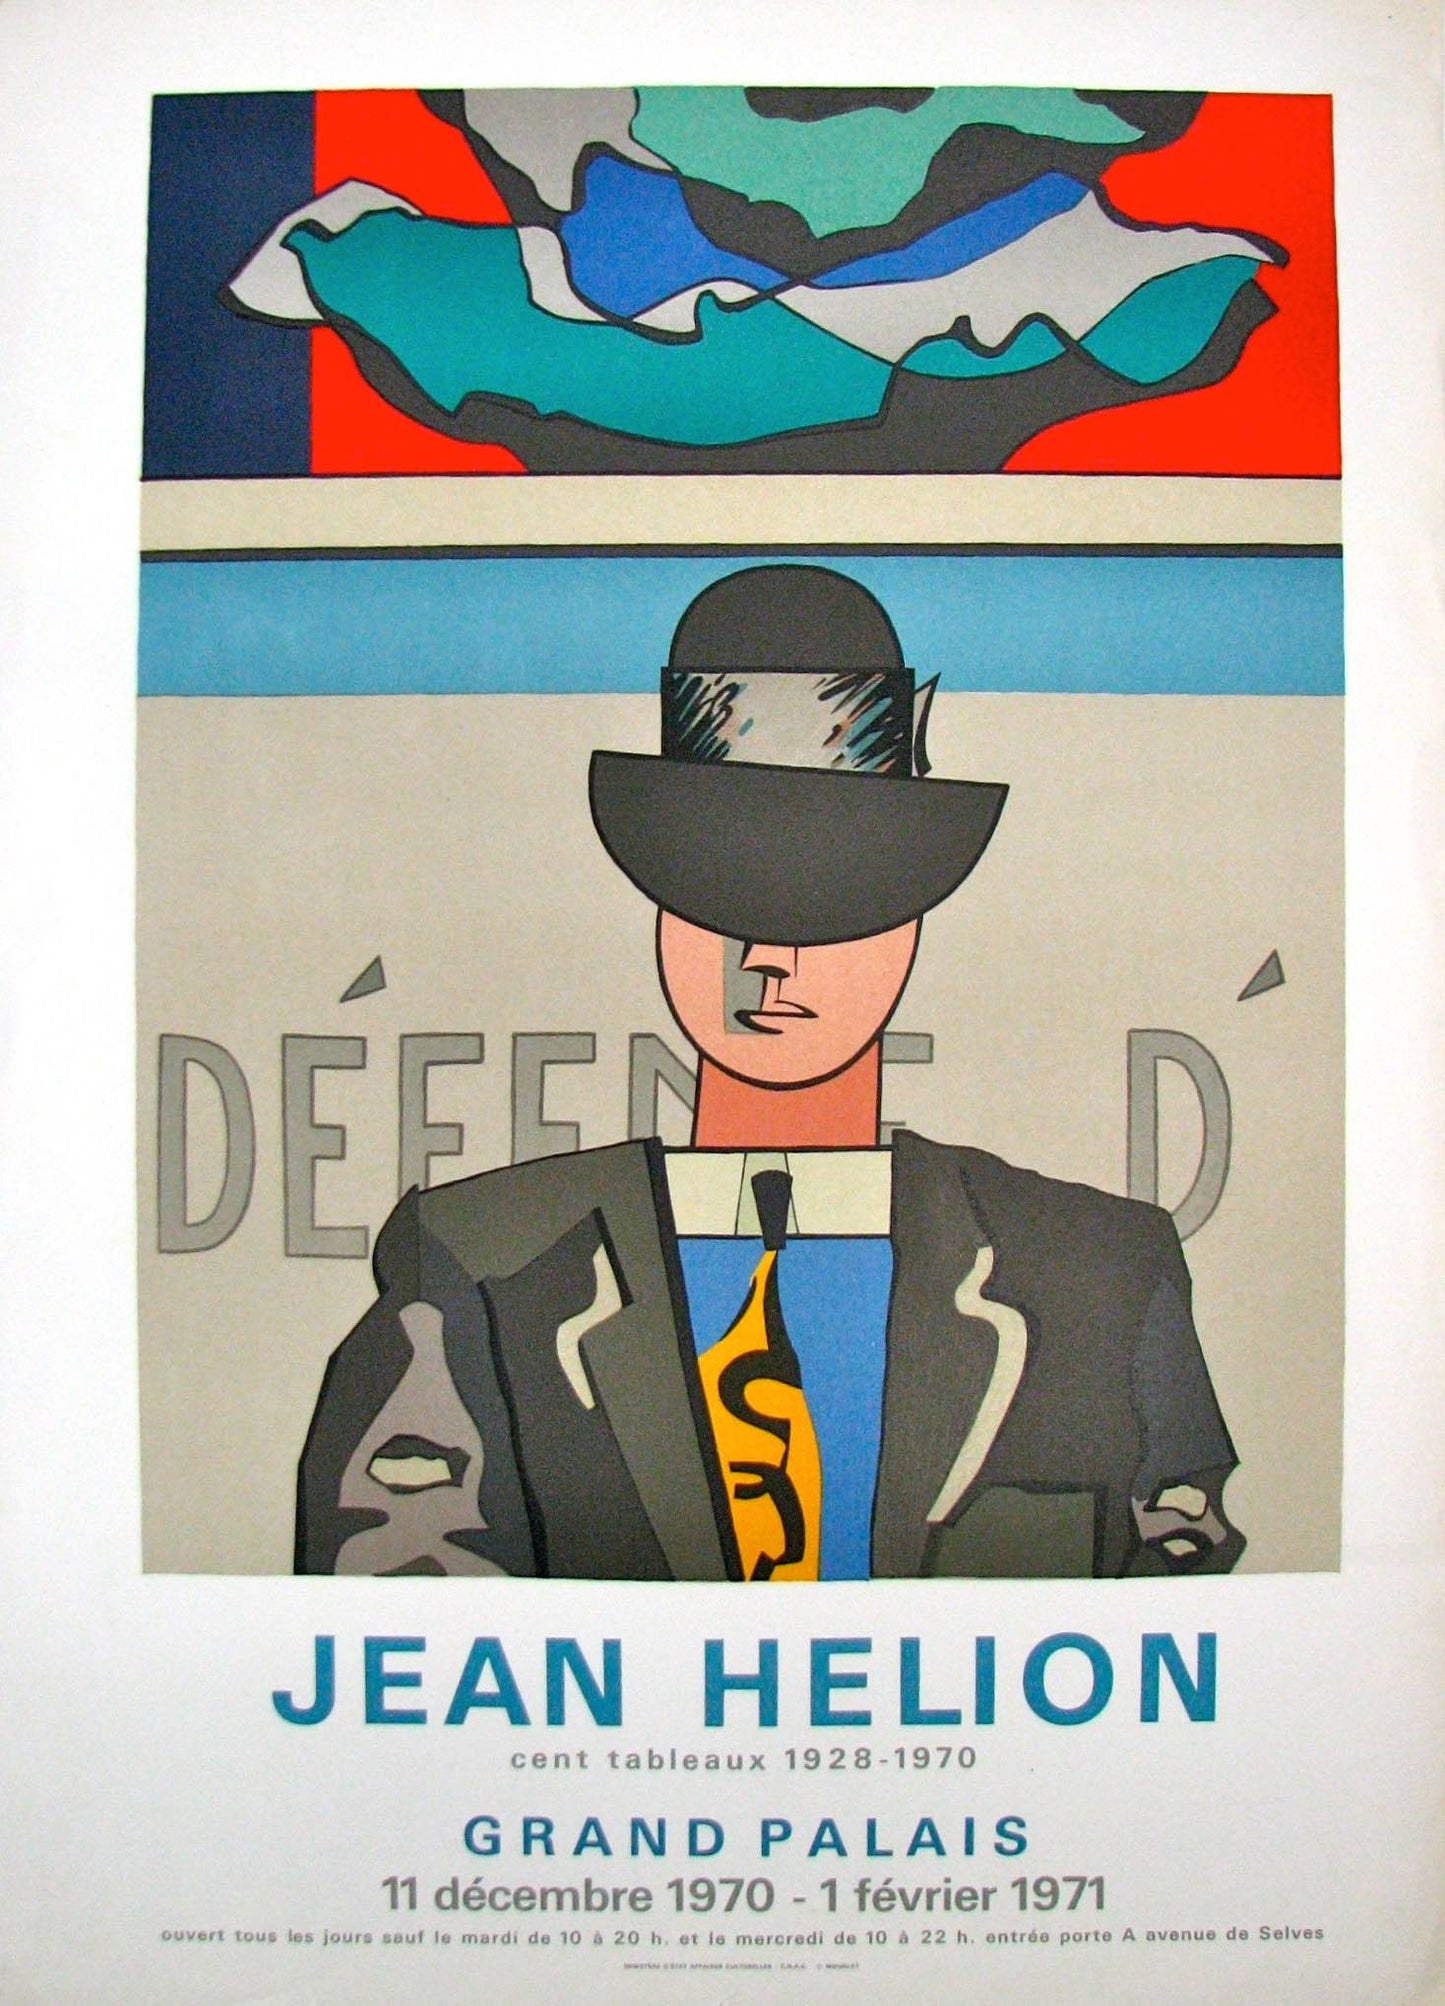 Cent Tableaux - Grand Palais (after) Jean Helion, 1970 - Mourlot Editions - Fine_Art - Poster - Lithograph - Wall Art - Vintage - Prints - Original